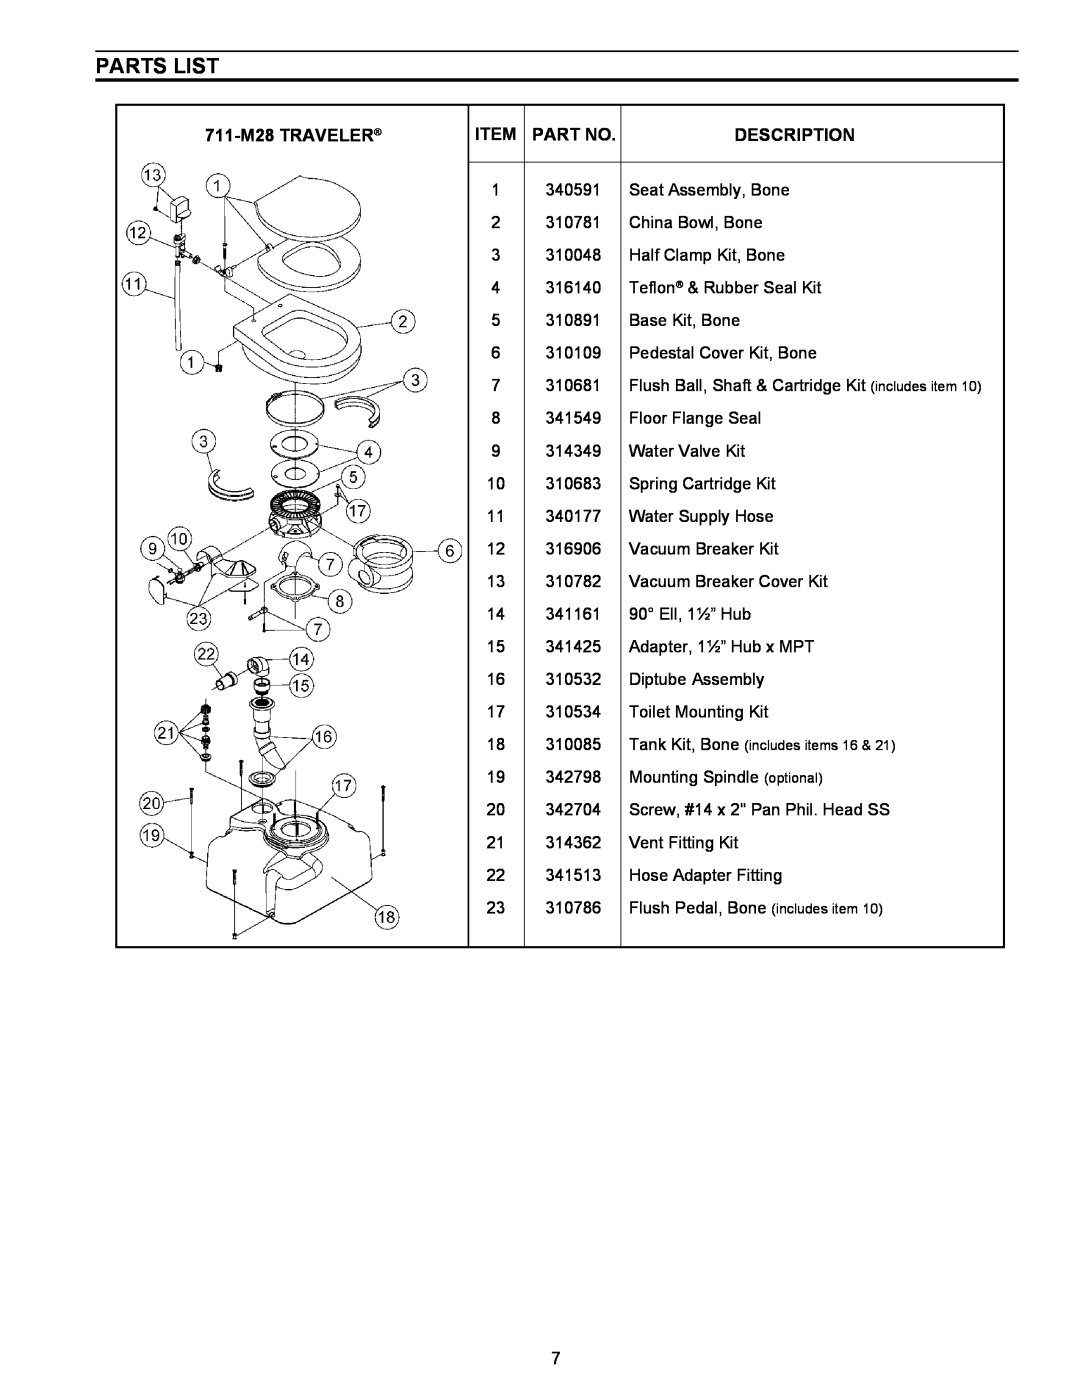 SeaLand owner manual Parts List, 711-M28TRAVELER, Item Part No, Description 